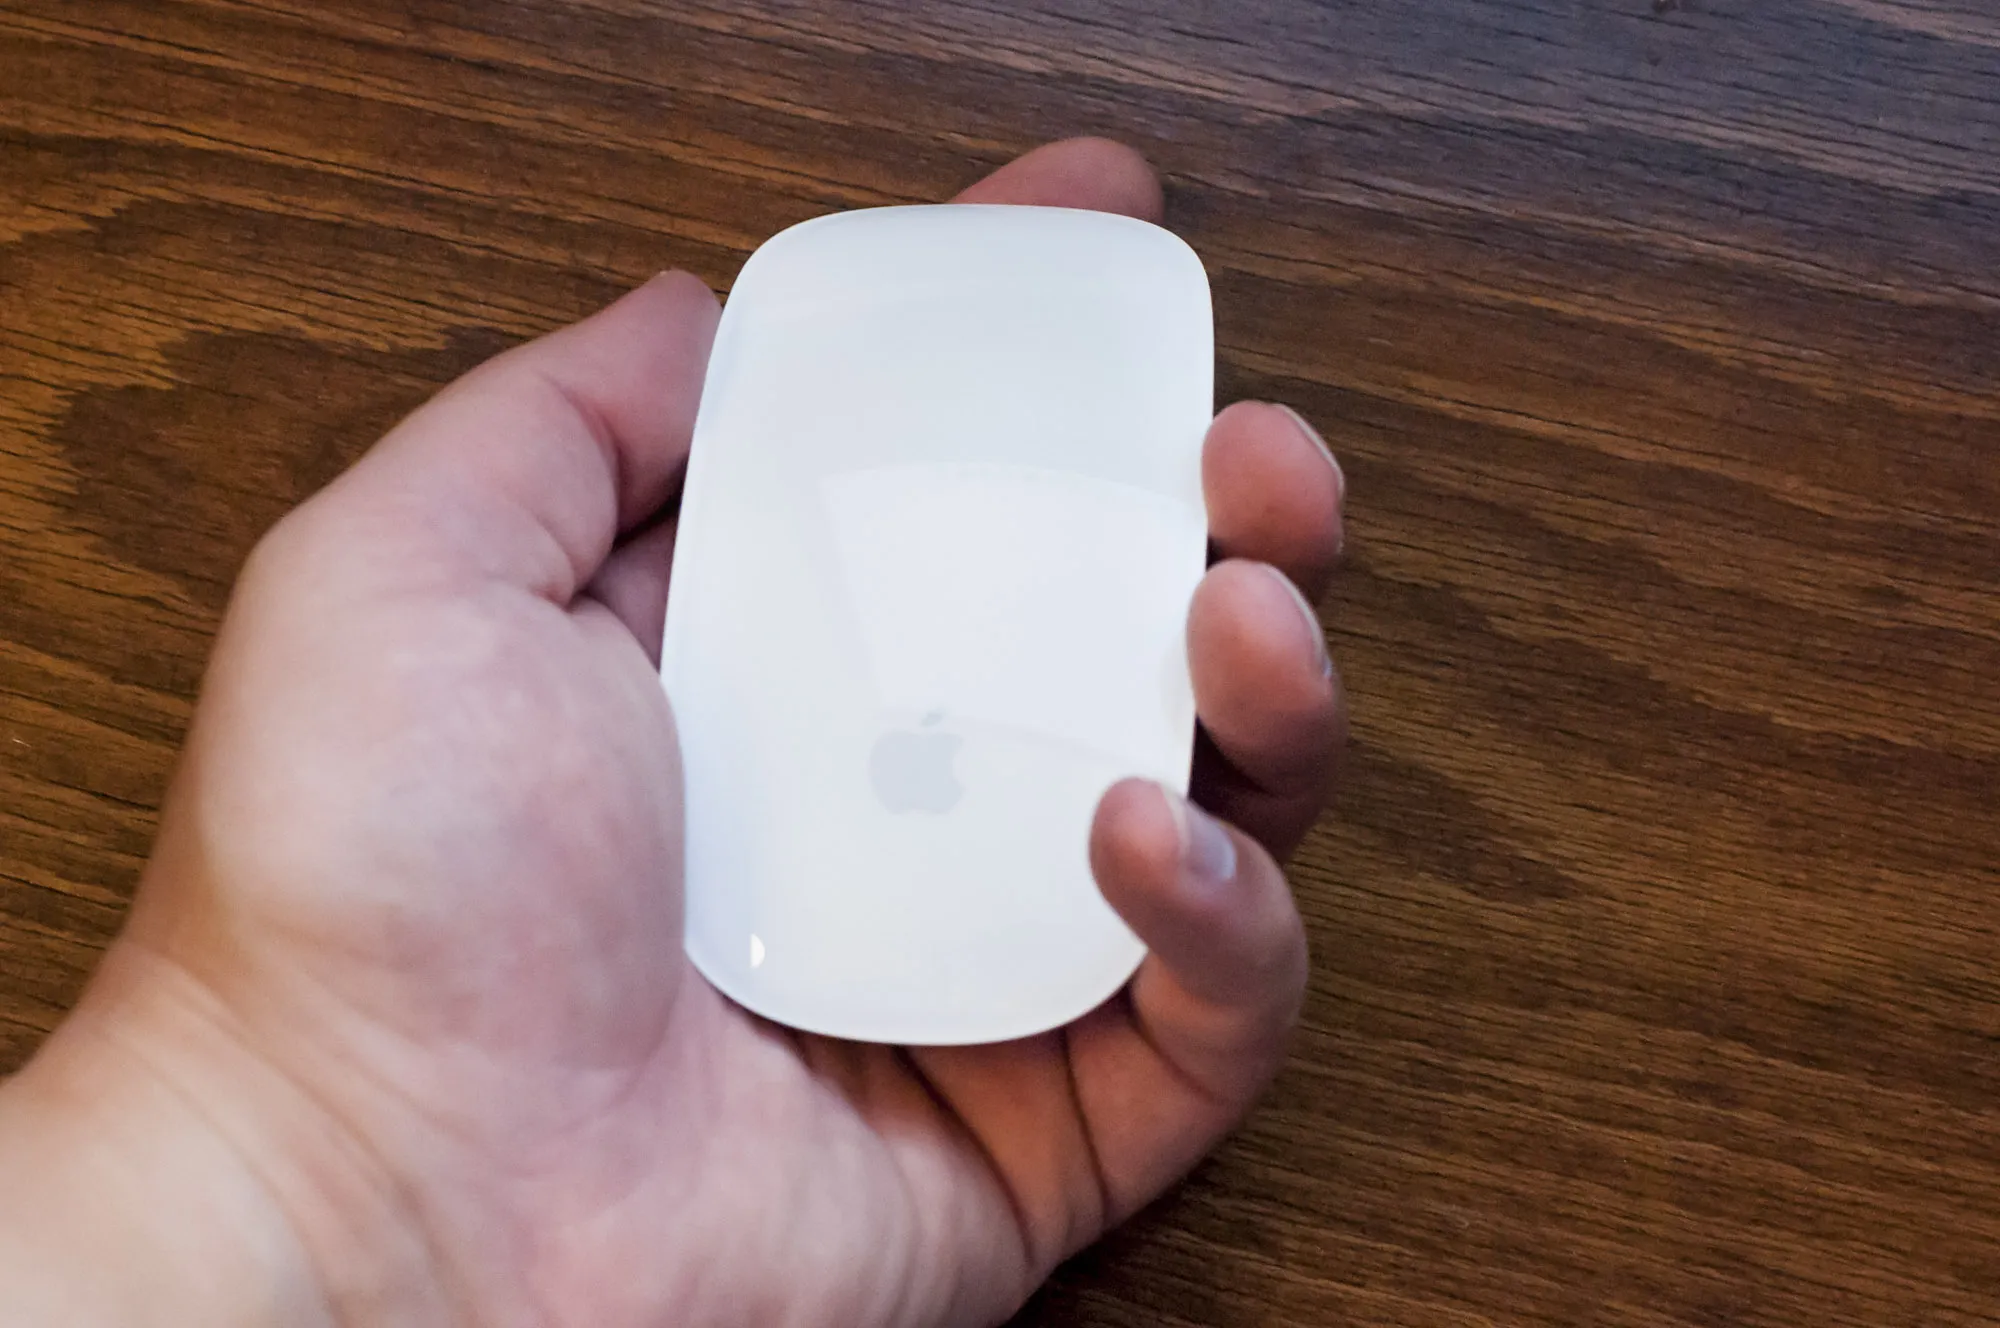 Meglio laser o ottico? Apple Magic mouse 2